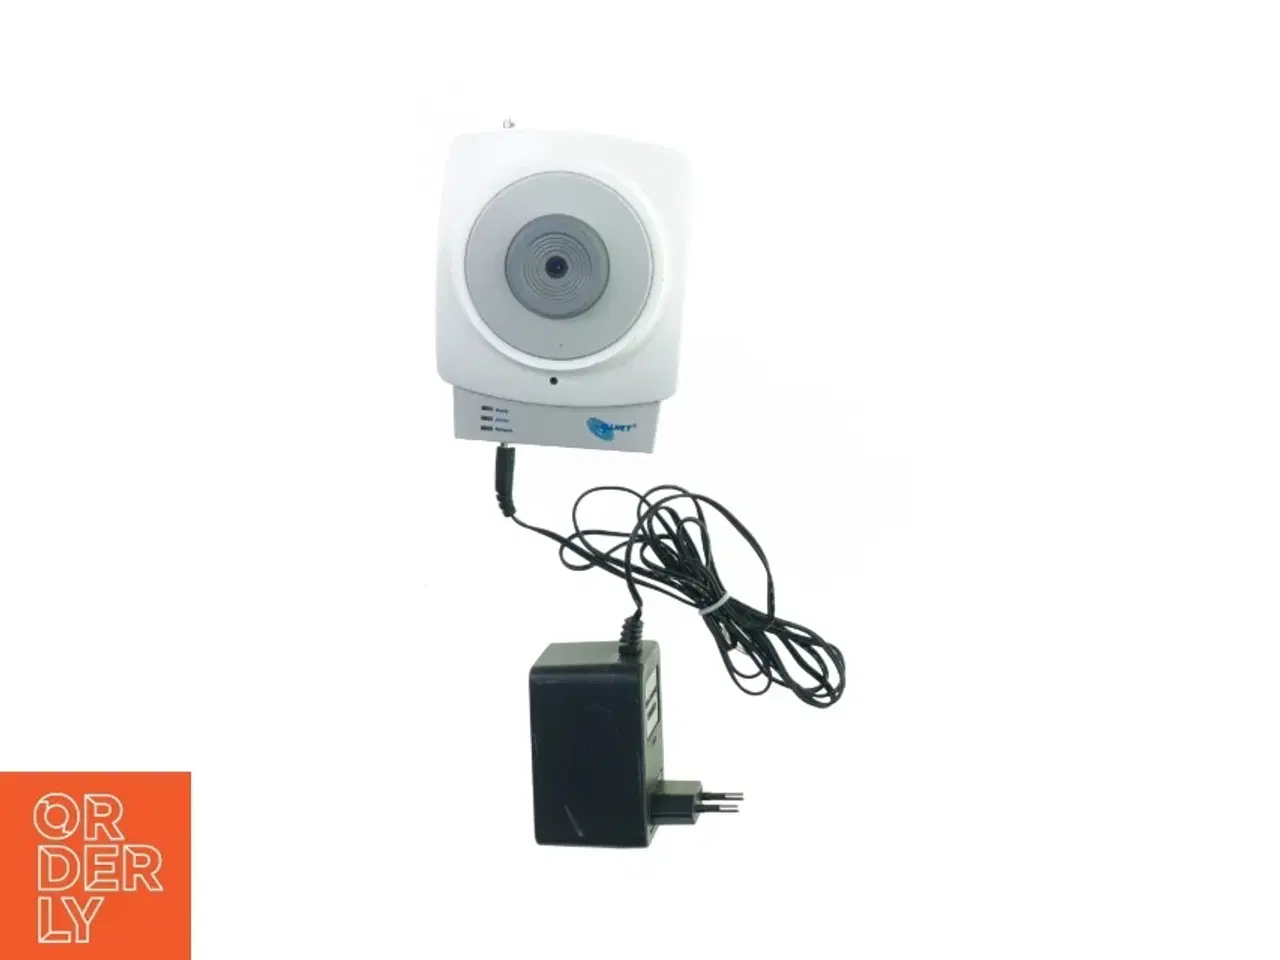 Billede 1 - Wireless Overvågnings kamera med Strømforsyning fra Allnet (str. 13 x 10 cm)